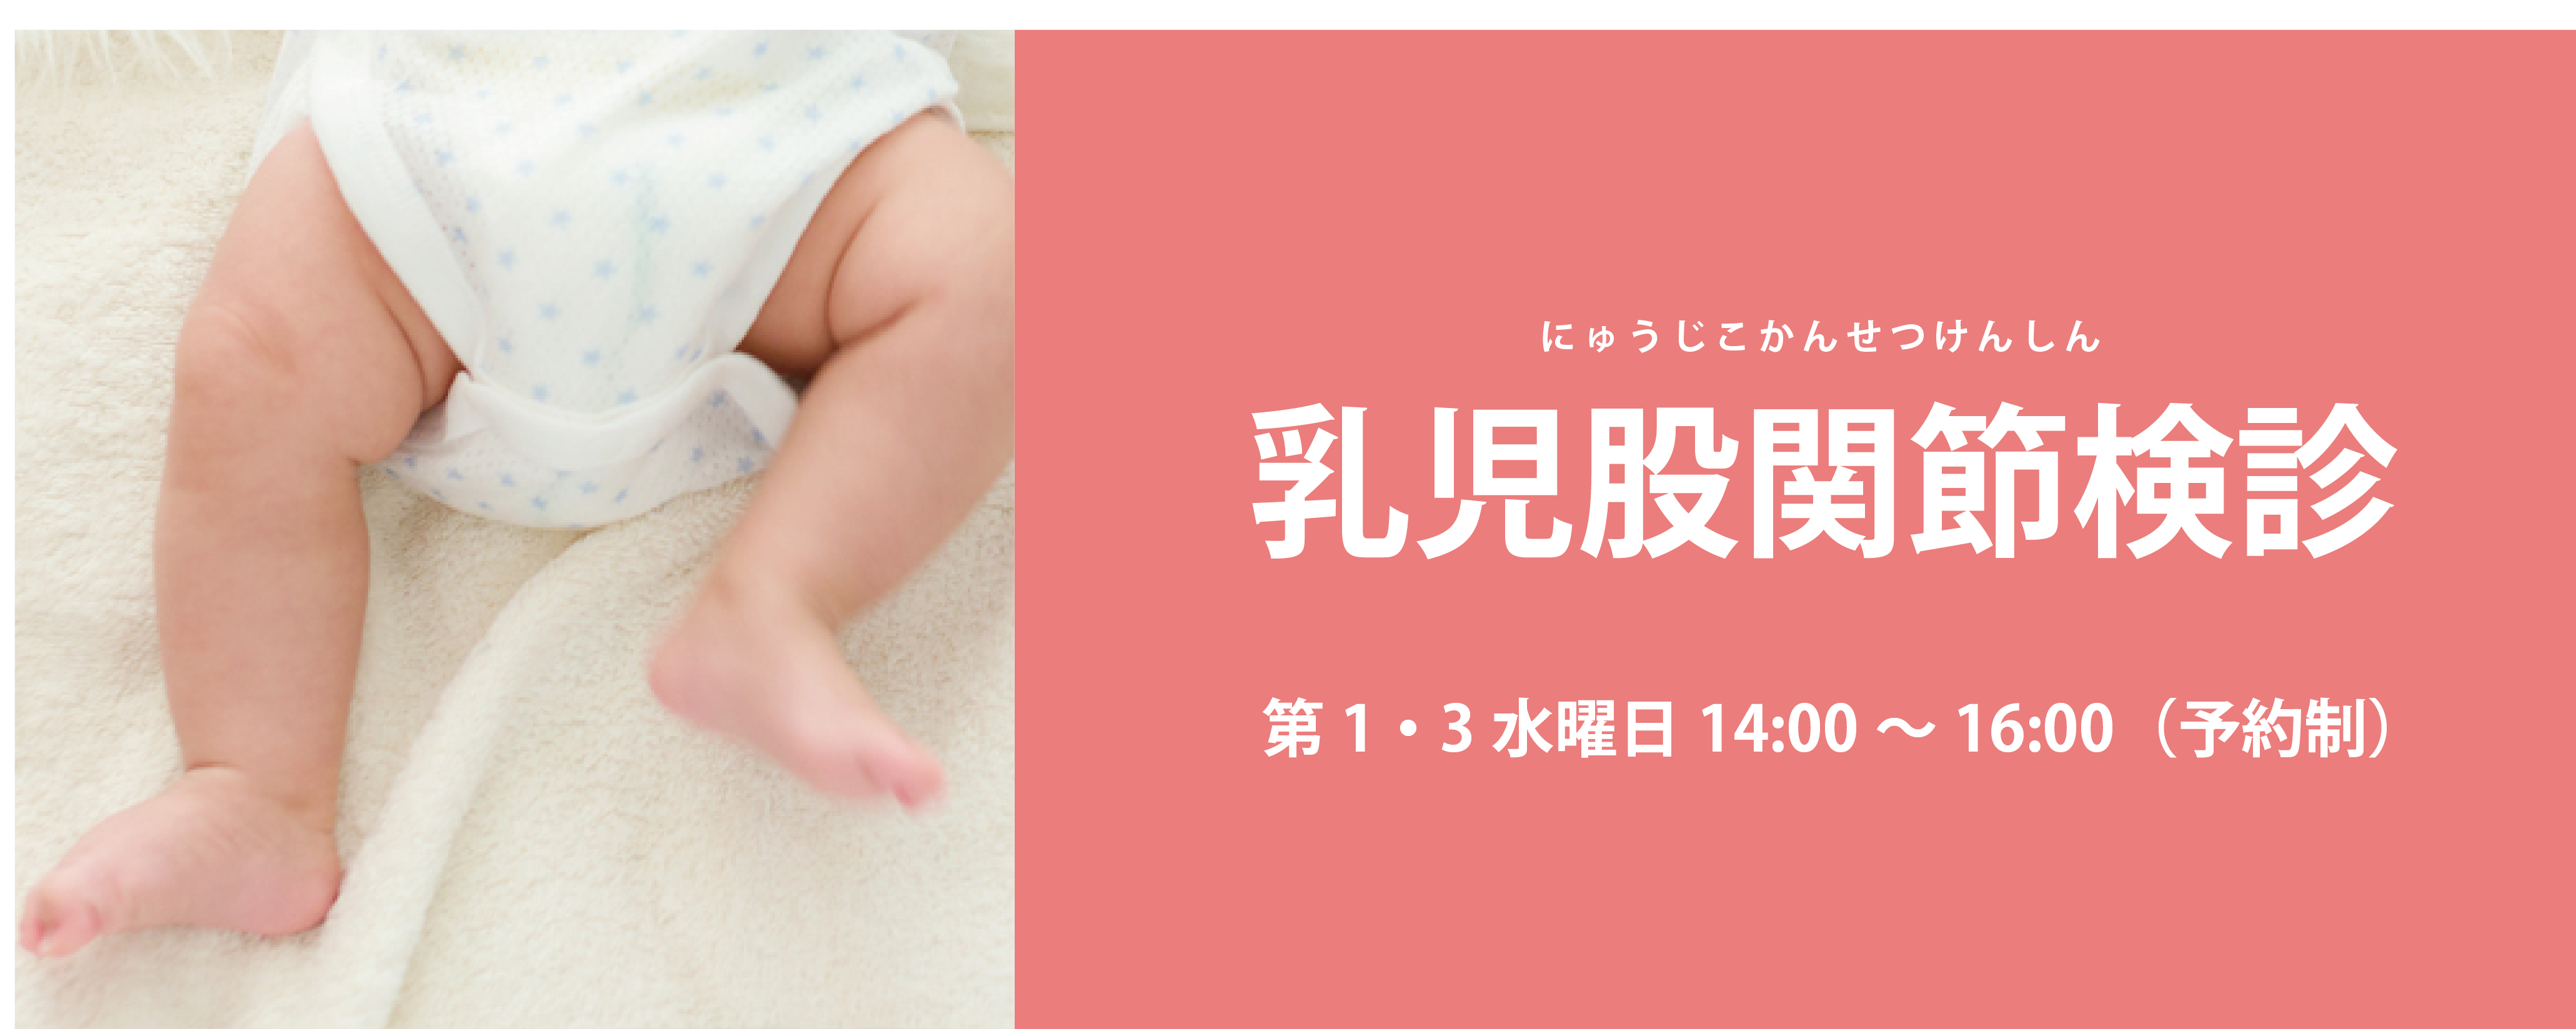 乳児股関節検診 済生会横浜市東部病院